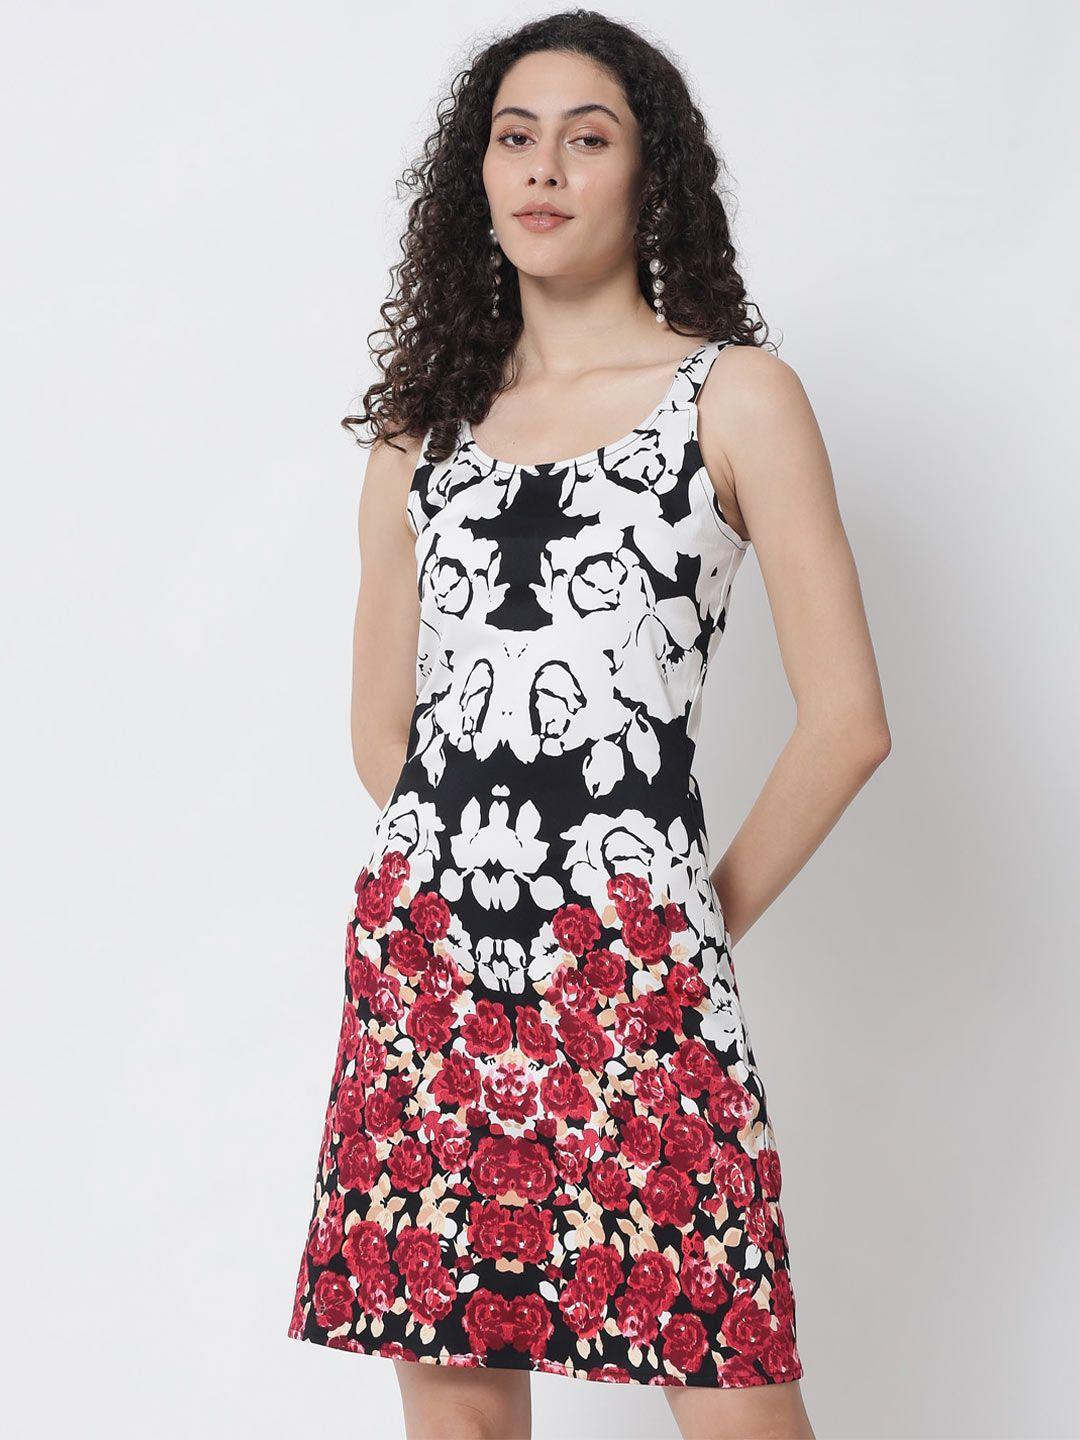 tulsattva-black-floral-print-sheath-dress